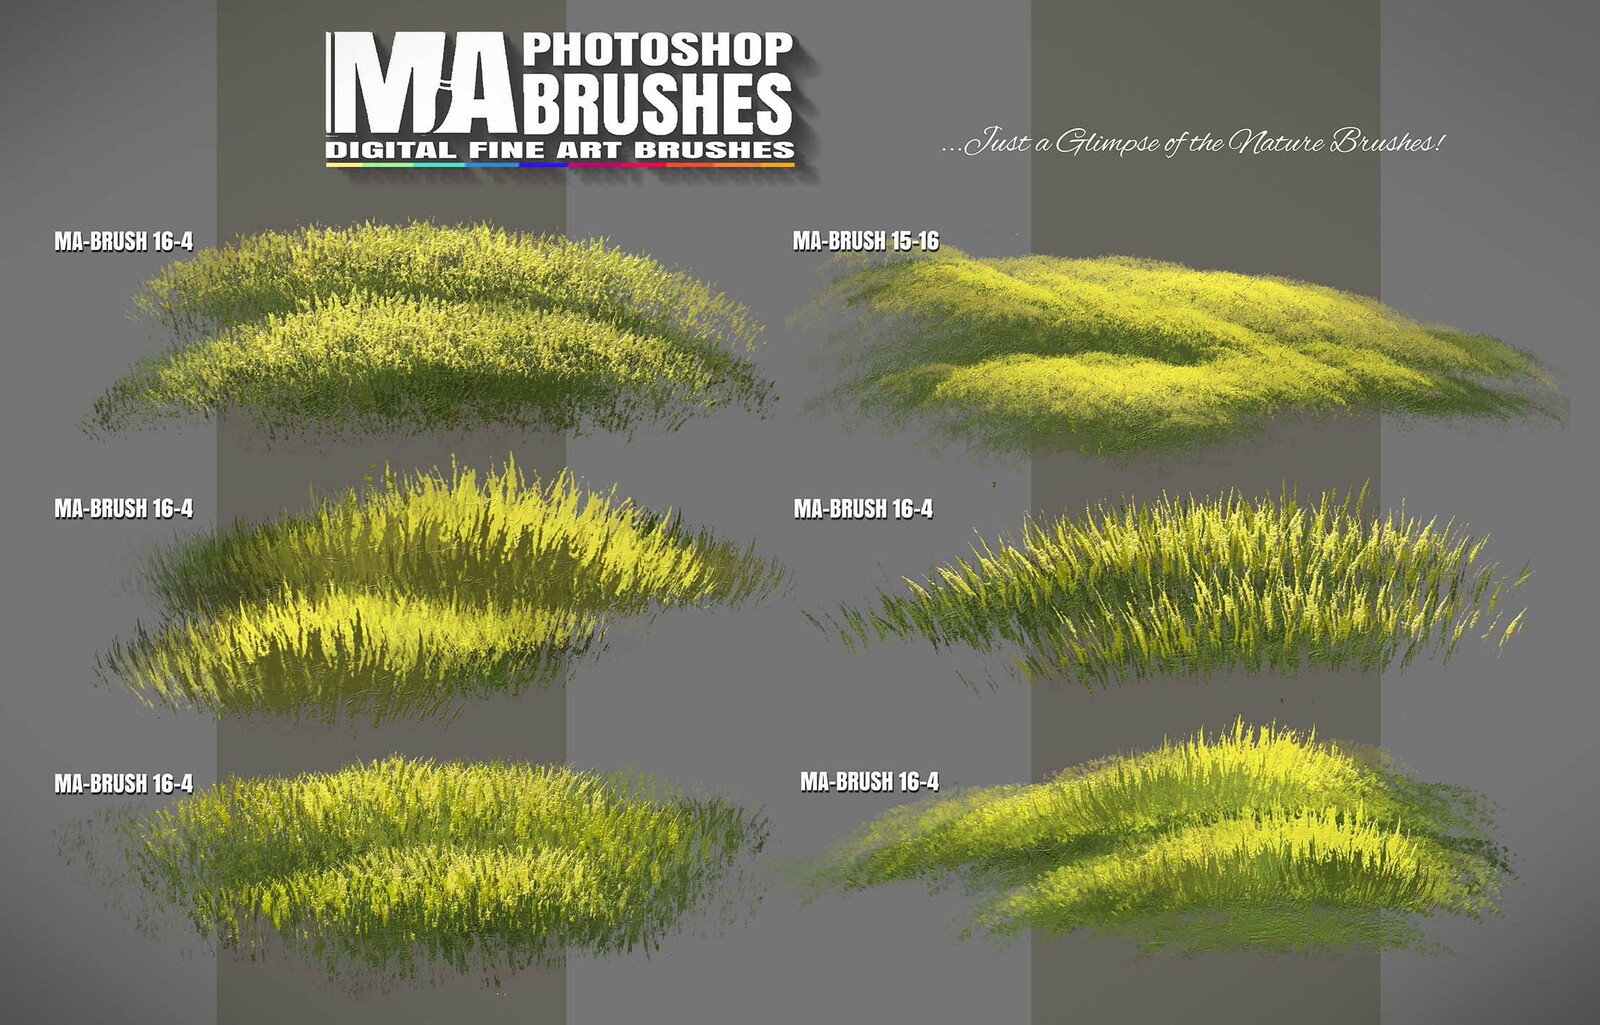 Photoshop Foliage / Grass / Tree / Leave Brushe Pack - MA-BRUSHES